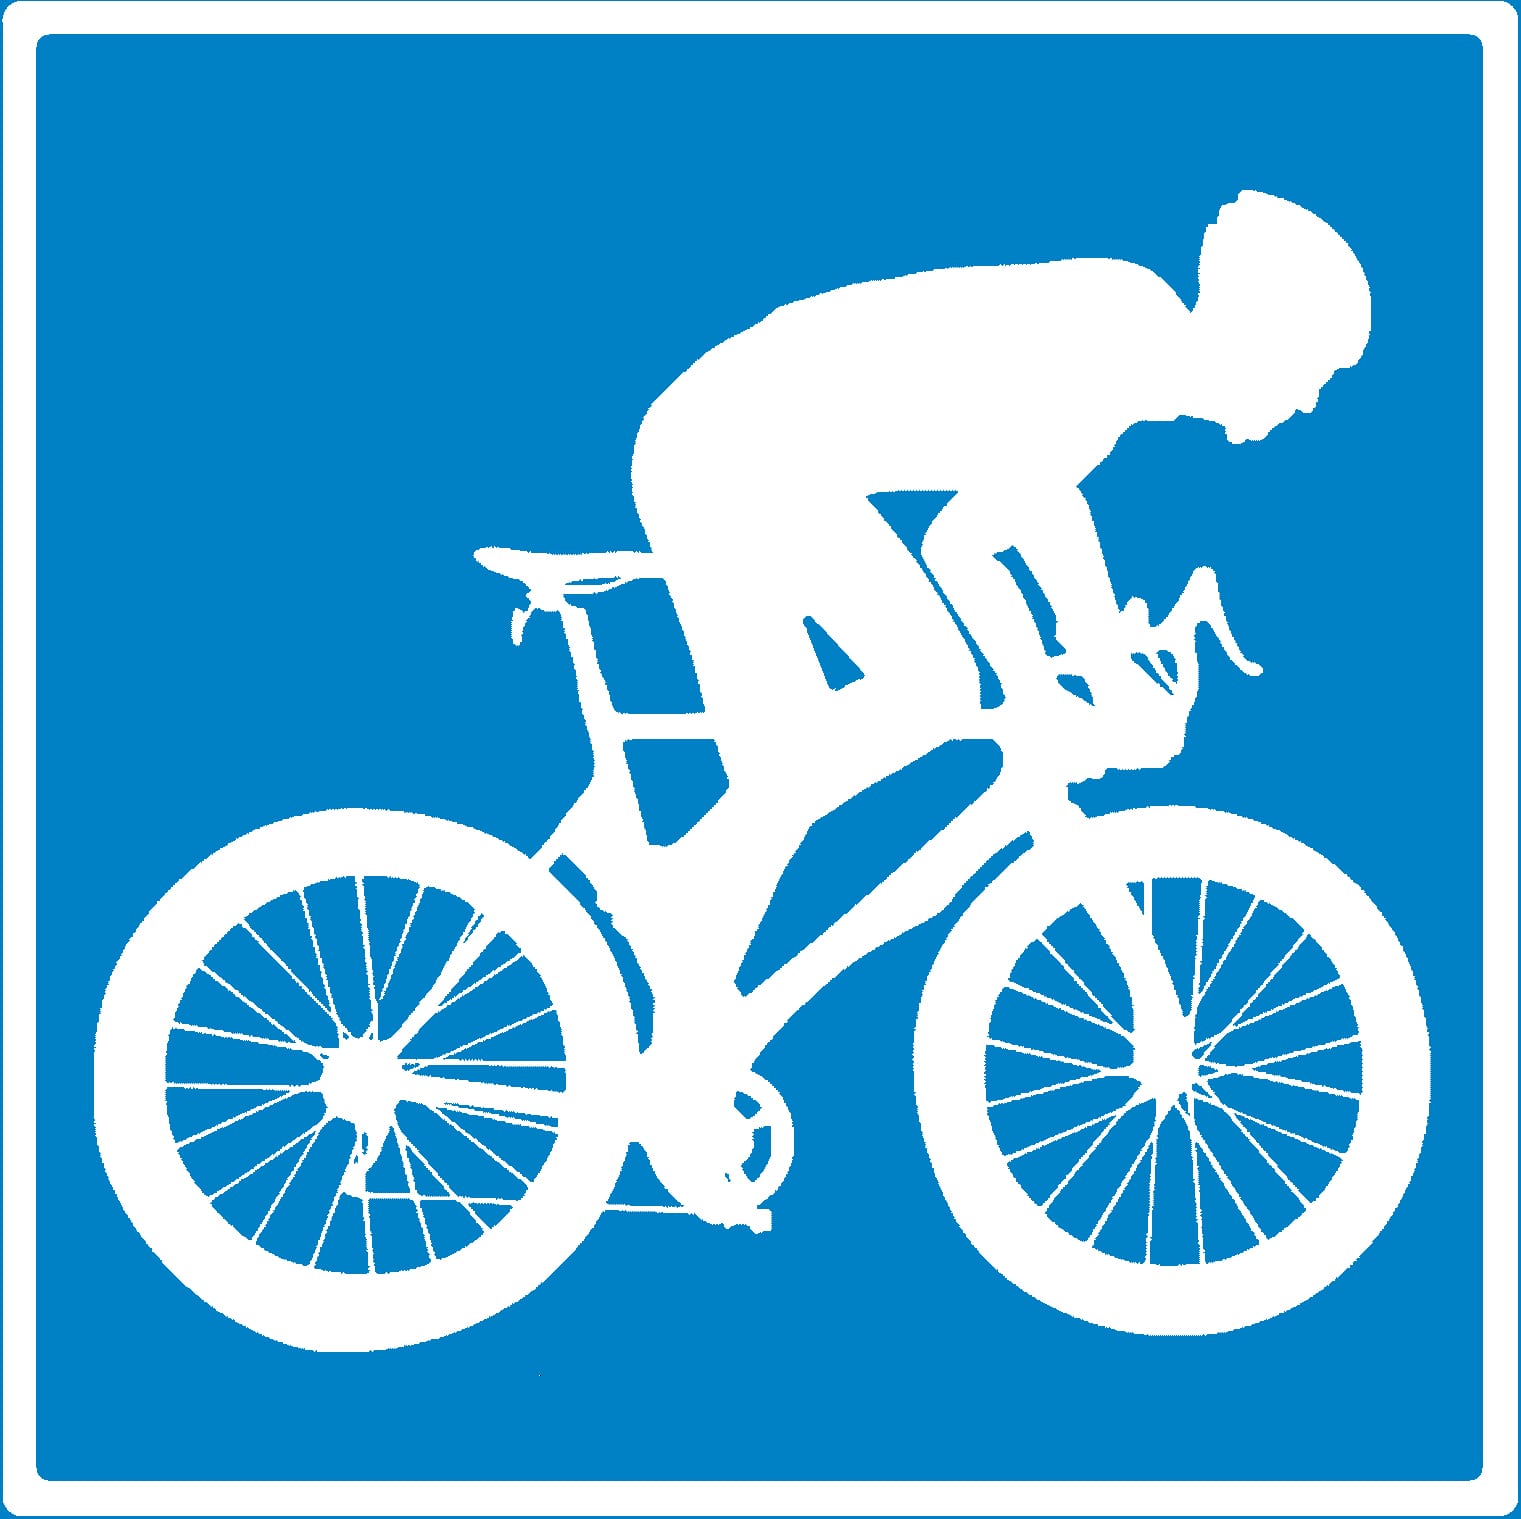 Cykling